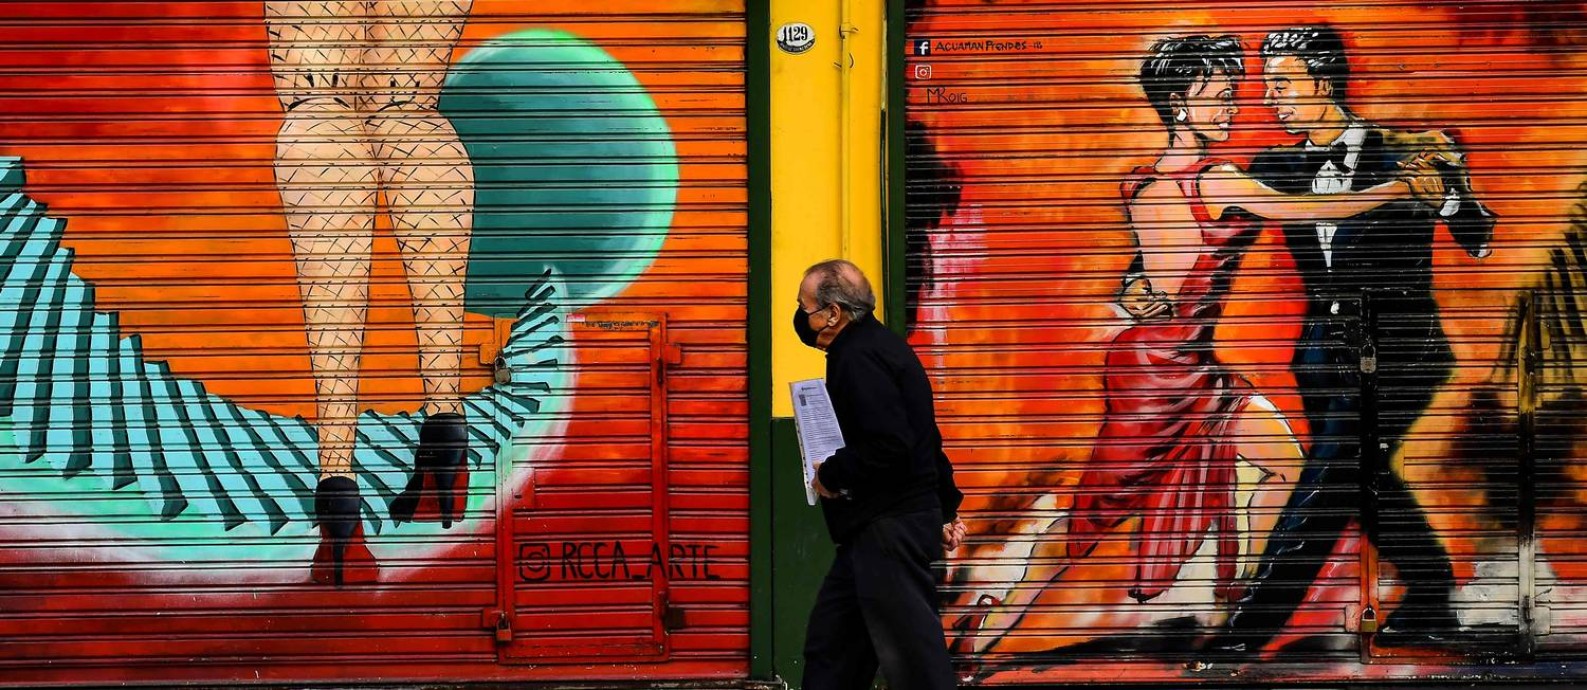 Homem caminha em frente a mural de tango em Buenos Aires: distância será necessária Foto: RONALDO SCHEMIDT / AFP